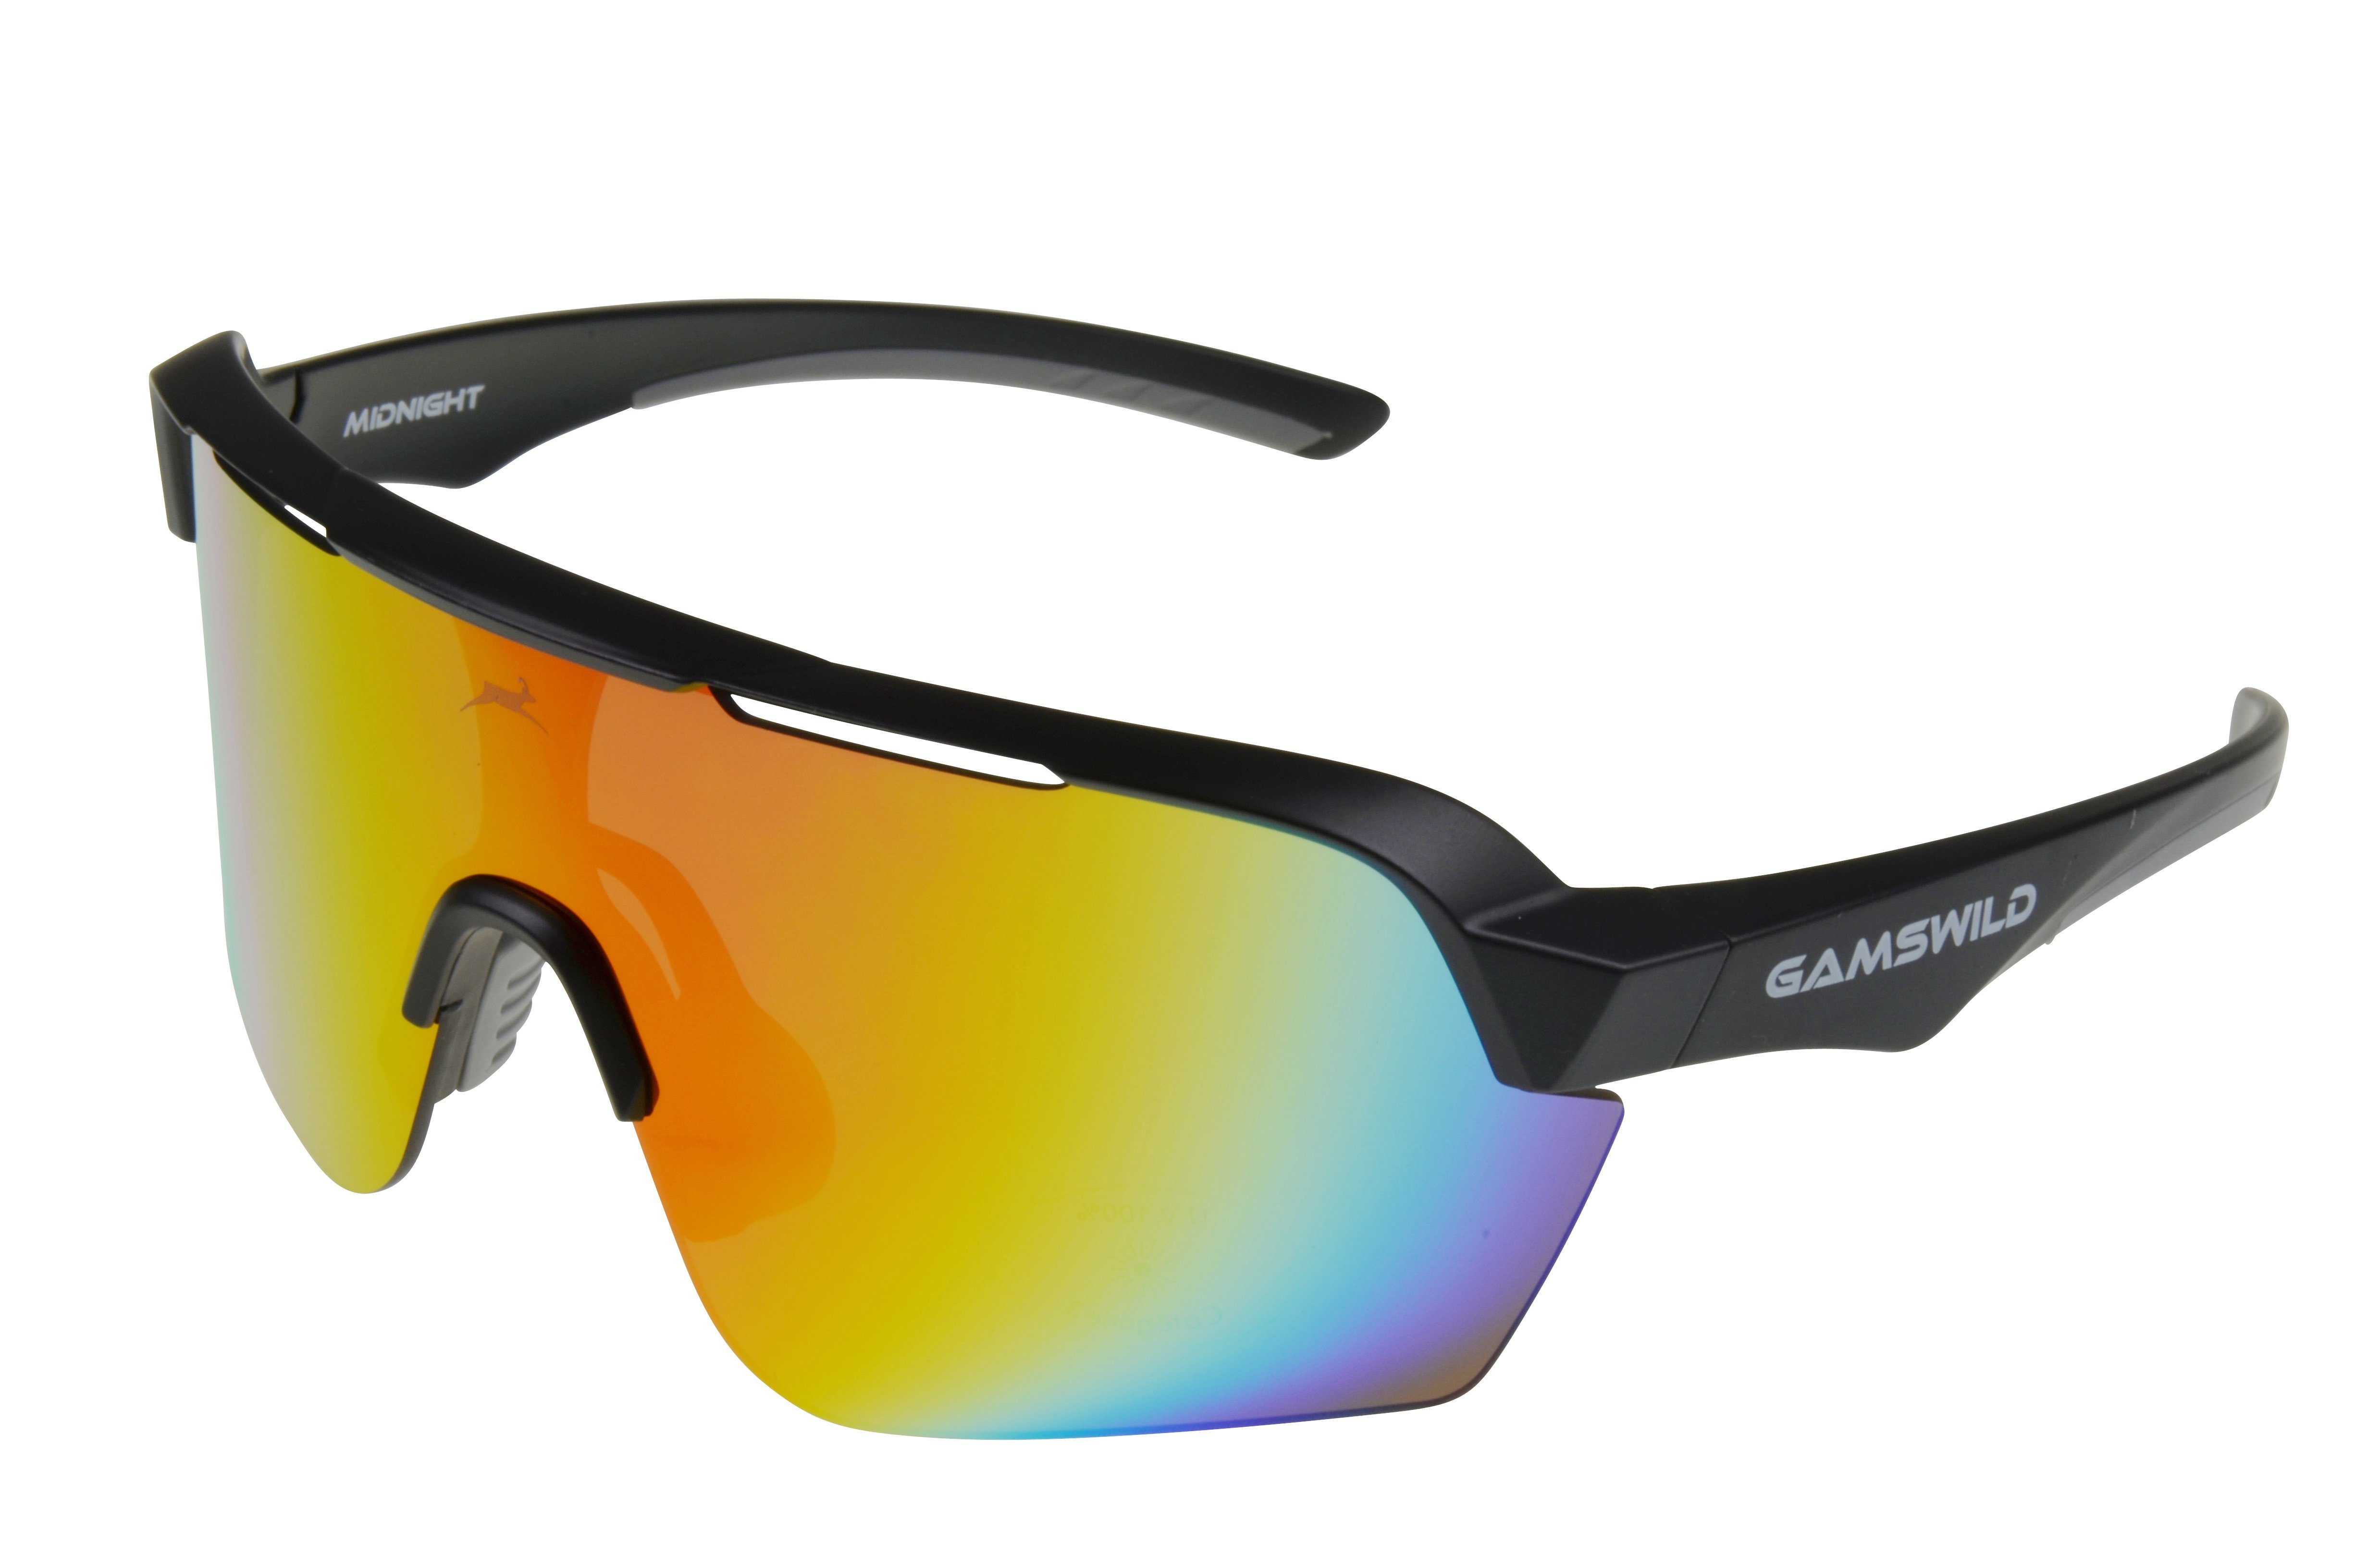 Herren Damen Sportbrille mintgrün Fahrradbrille schwarz, WS7138 extra Skibrille Scheibe, weiß, pink, große blau, Gamswild Sonnenbrille Unisex,